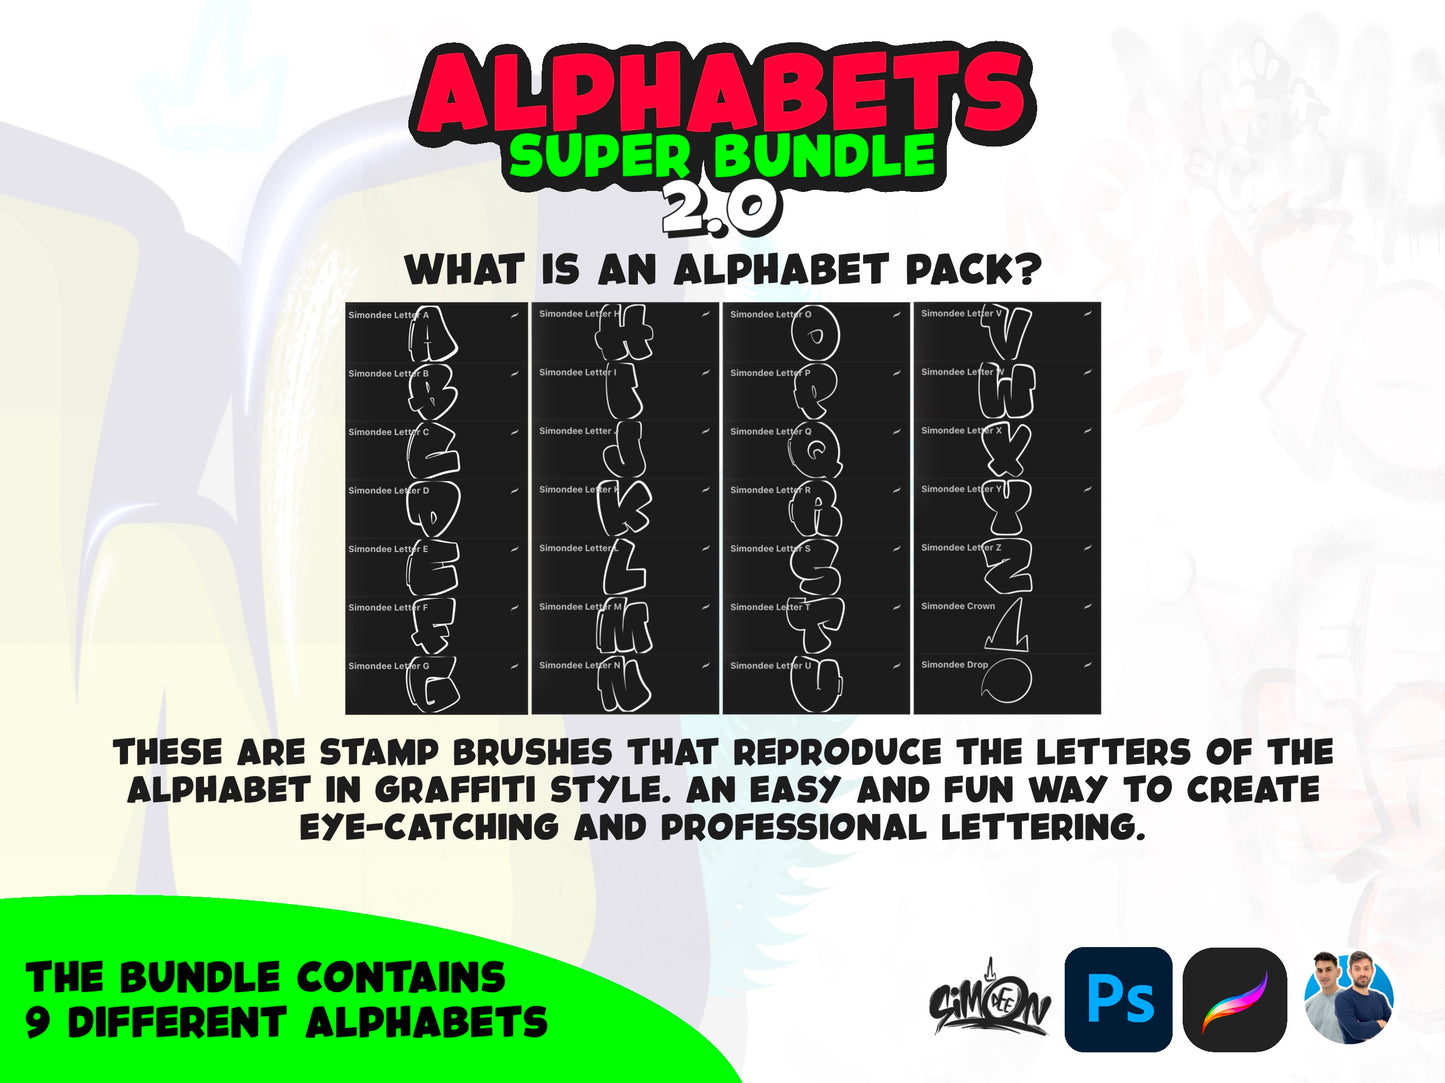 Alphabets Super Bundle 2.0